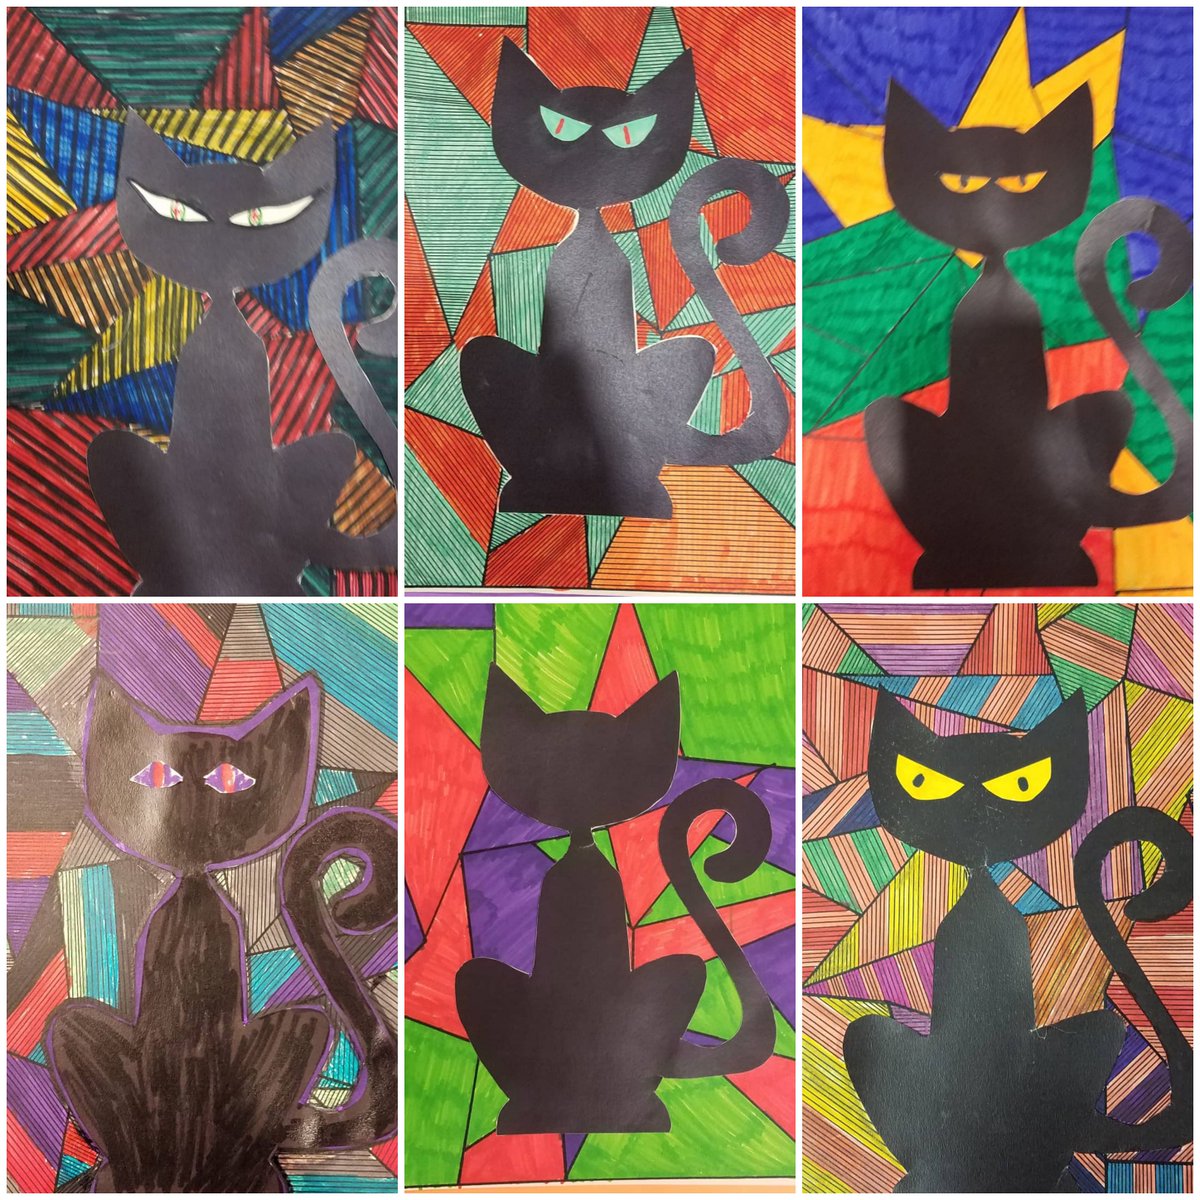 Teens got creative at last night's program, 'Black Cat Art Night'!
#libraryprograms #teenprograms #artnight